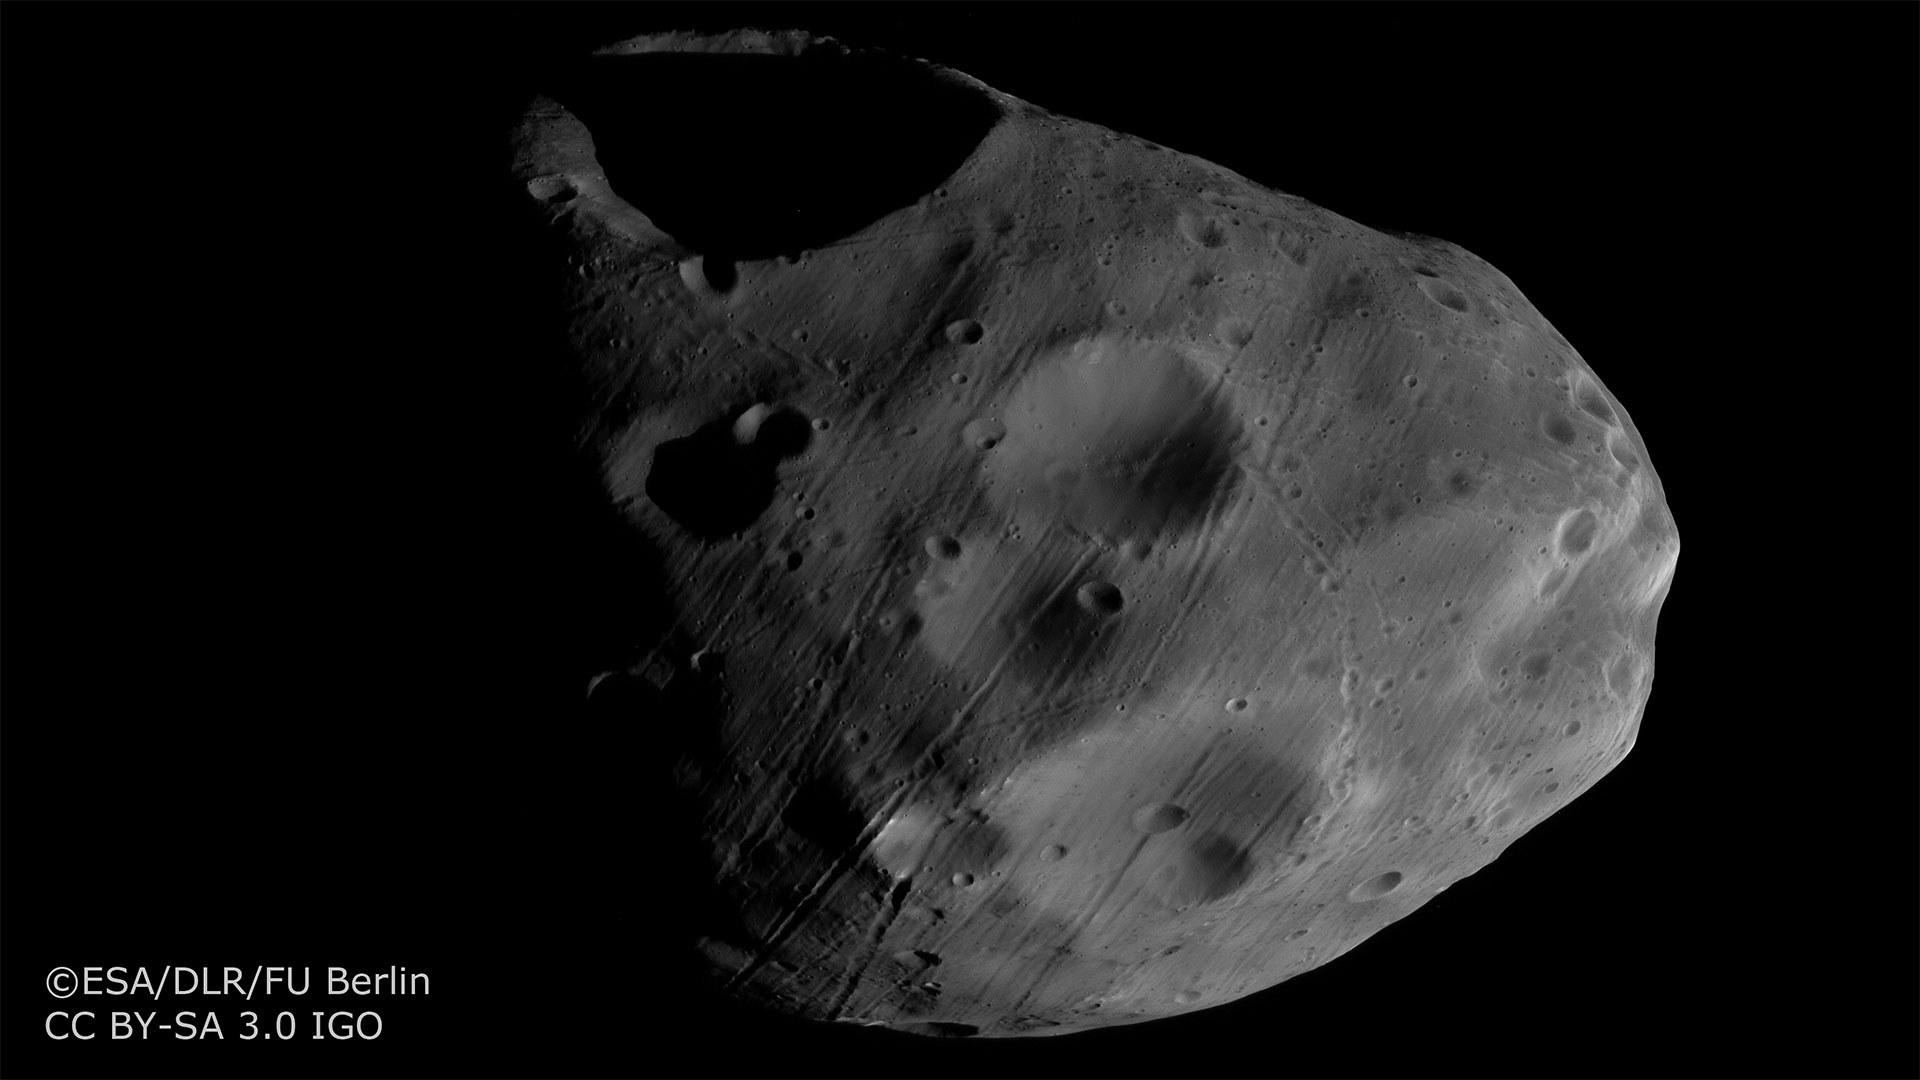 Phobos-Aufnahme mit dem Nadirkanal der HRSC